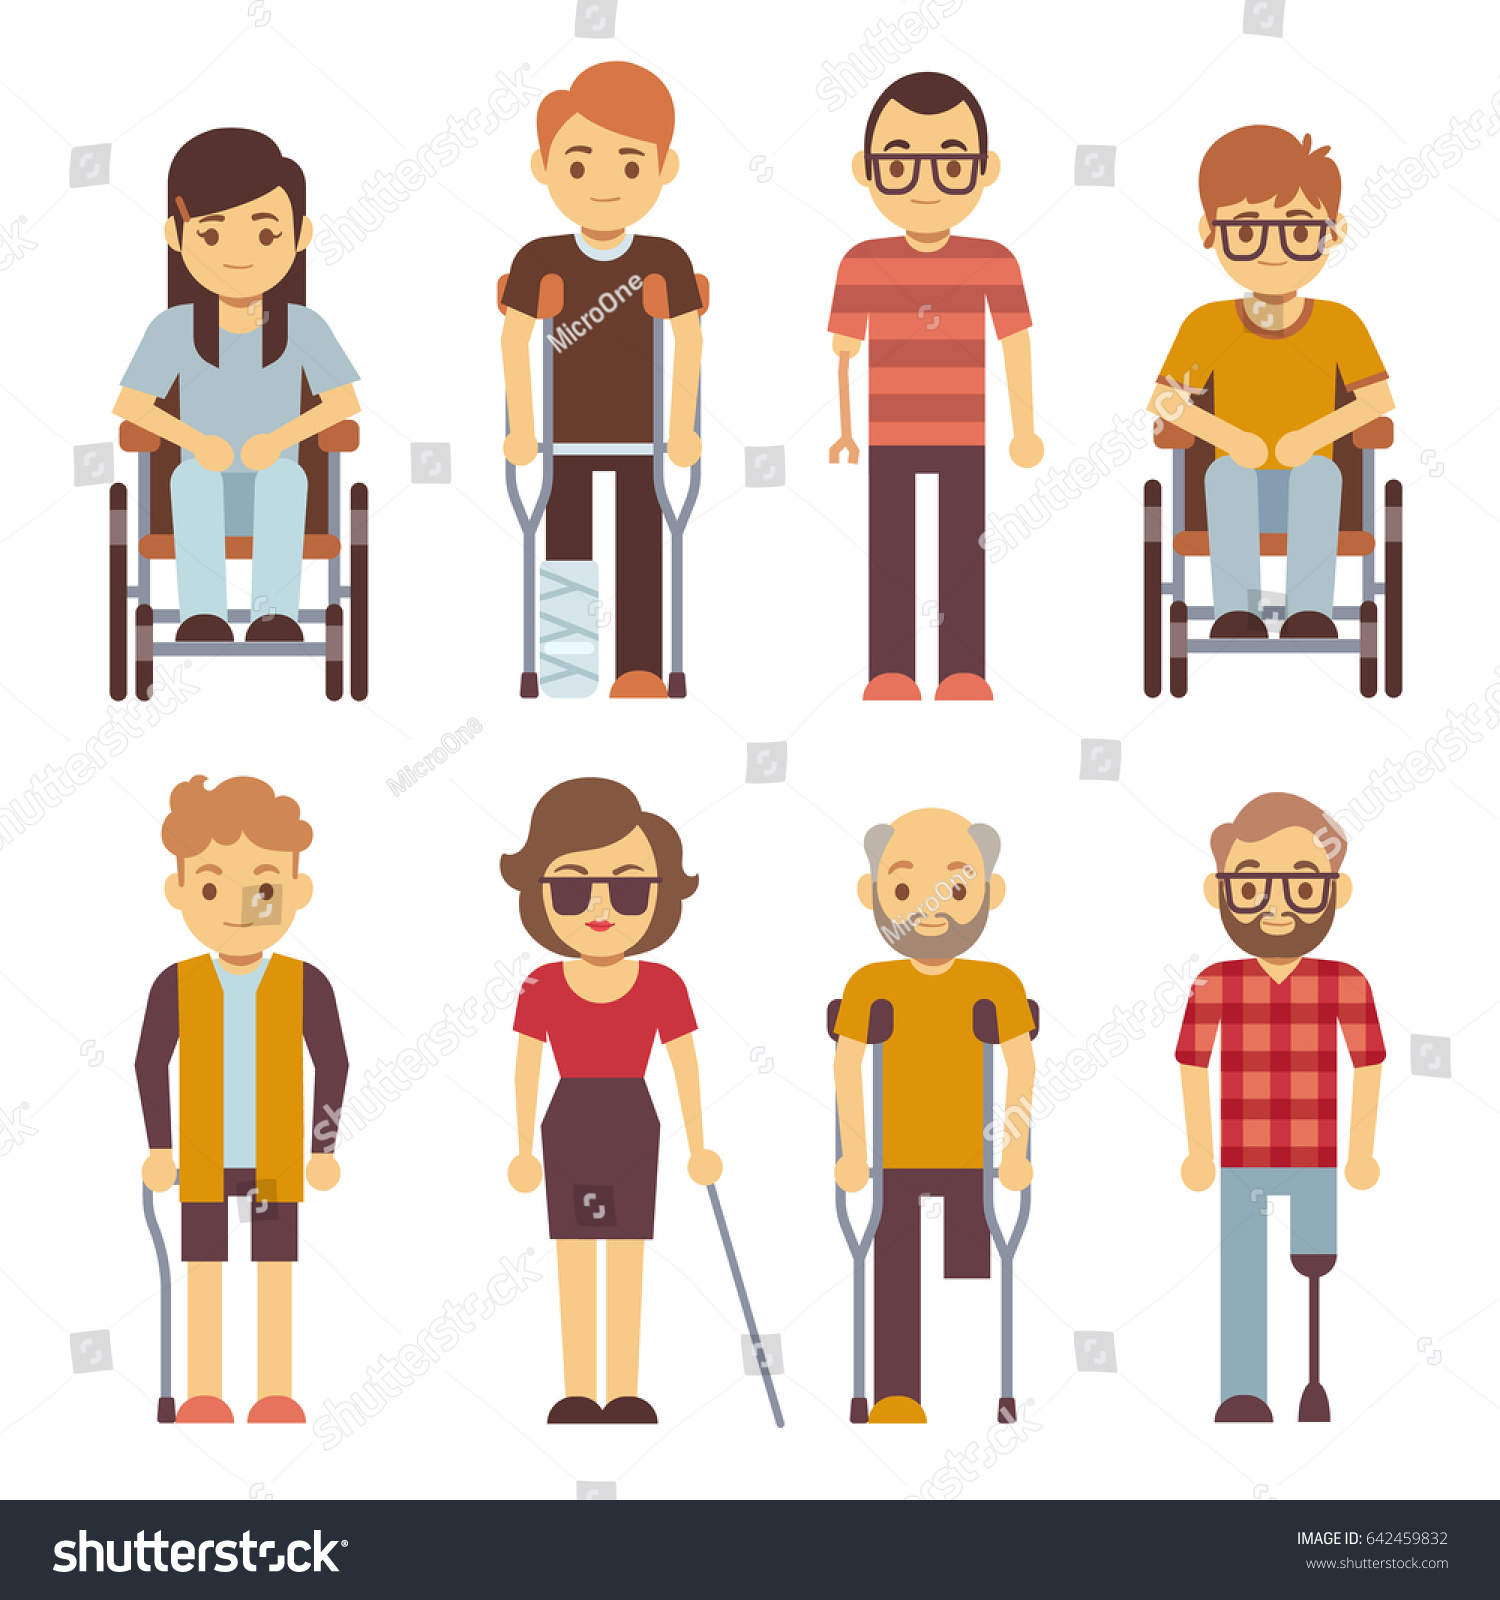 身障者のフラットアイコン 車椅子障害者 障害者の若いイラスト のイラスト素材